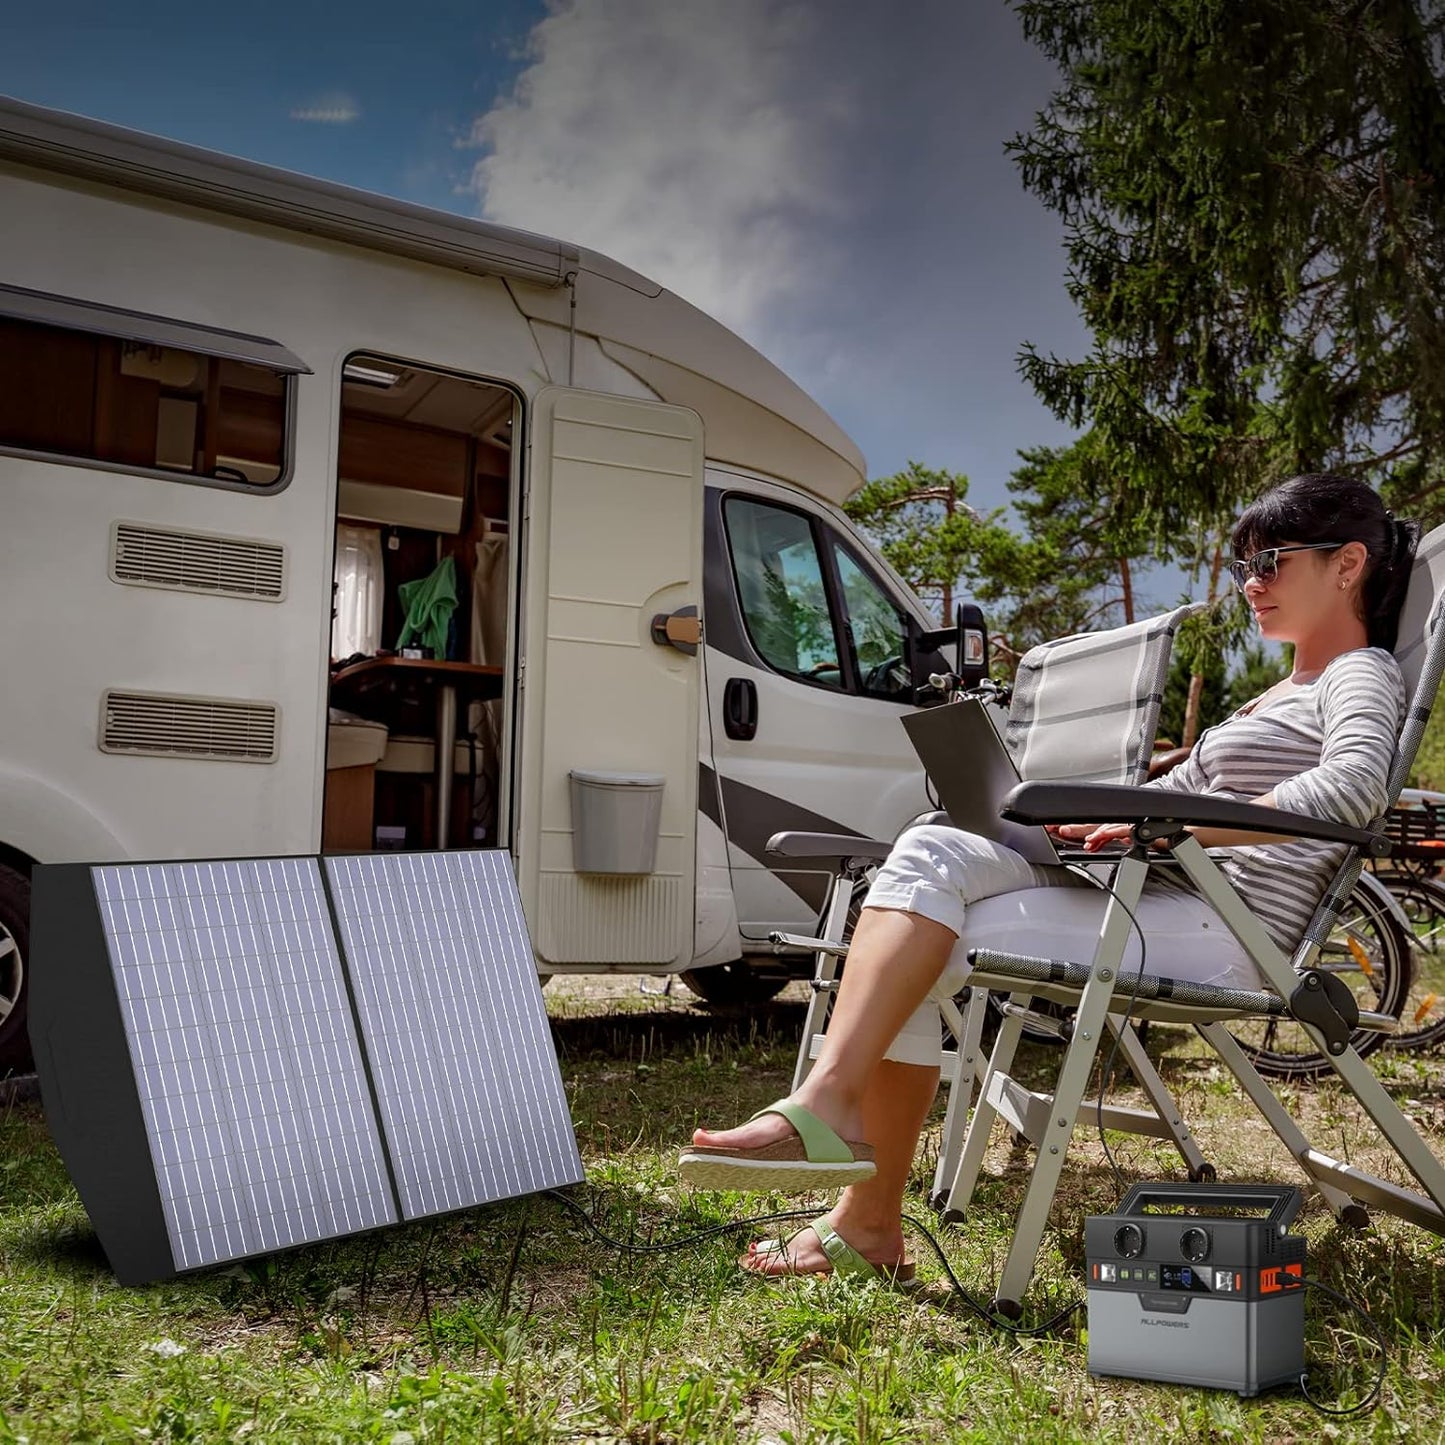 ALLPOWERS S300 Centrale elettrica portatile con 1 pannello solare da 100 W, generatori di corrente mobili da 288 Wh / 78000 mAh Batteria da 300 W Accumulo di energia mobile per feste in giardino Viaggi Camping Camper Emergenza